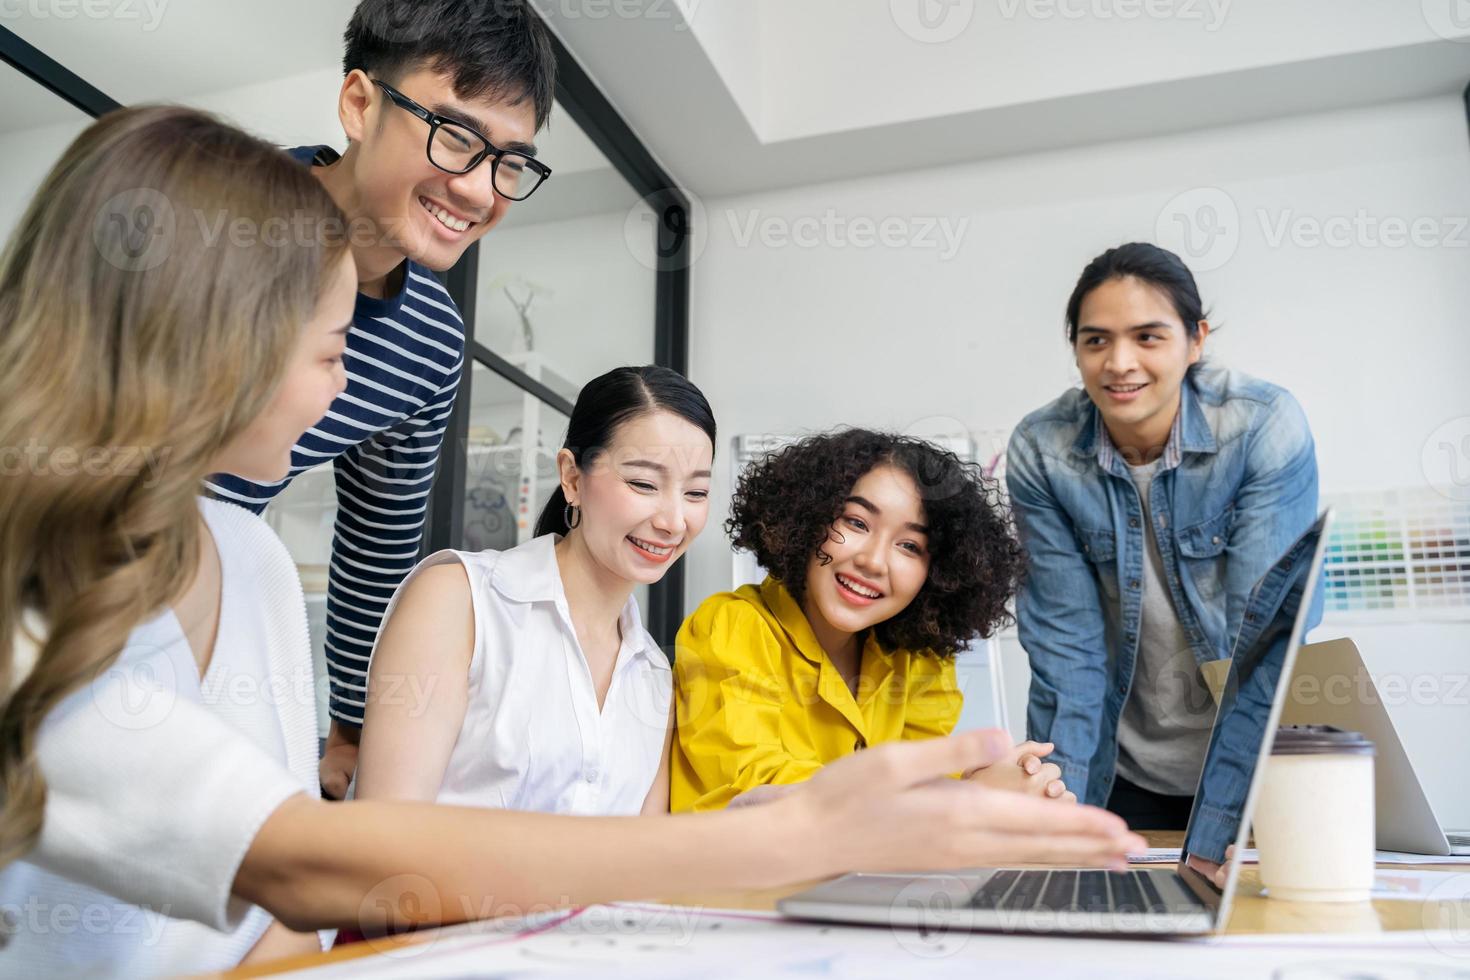 grupo de equipe de empresários criativos asiáticos jovens sérios reunidos no escritório moderno, planejando e compartilhando ideias foto